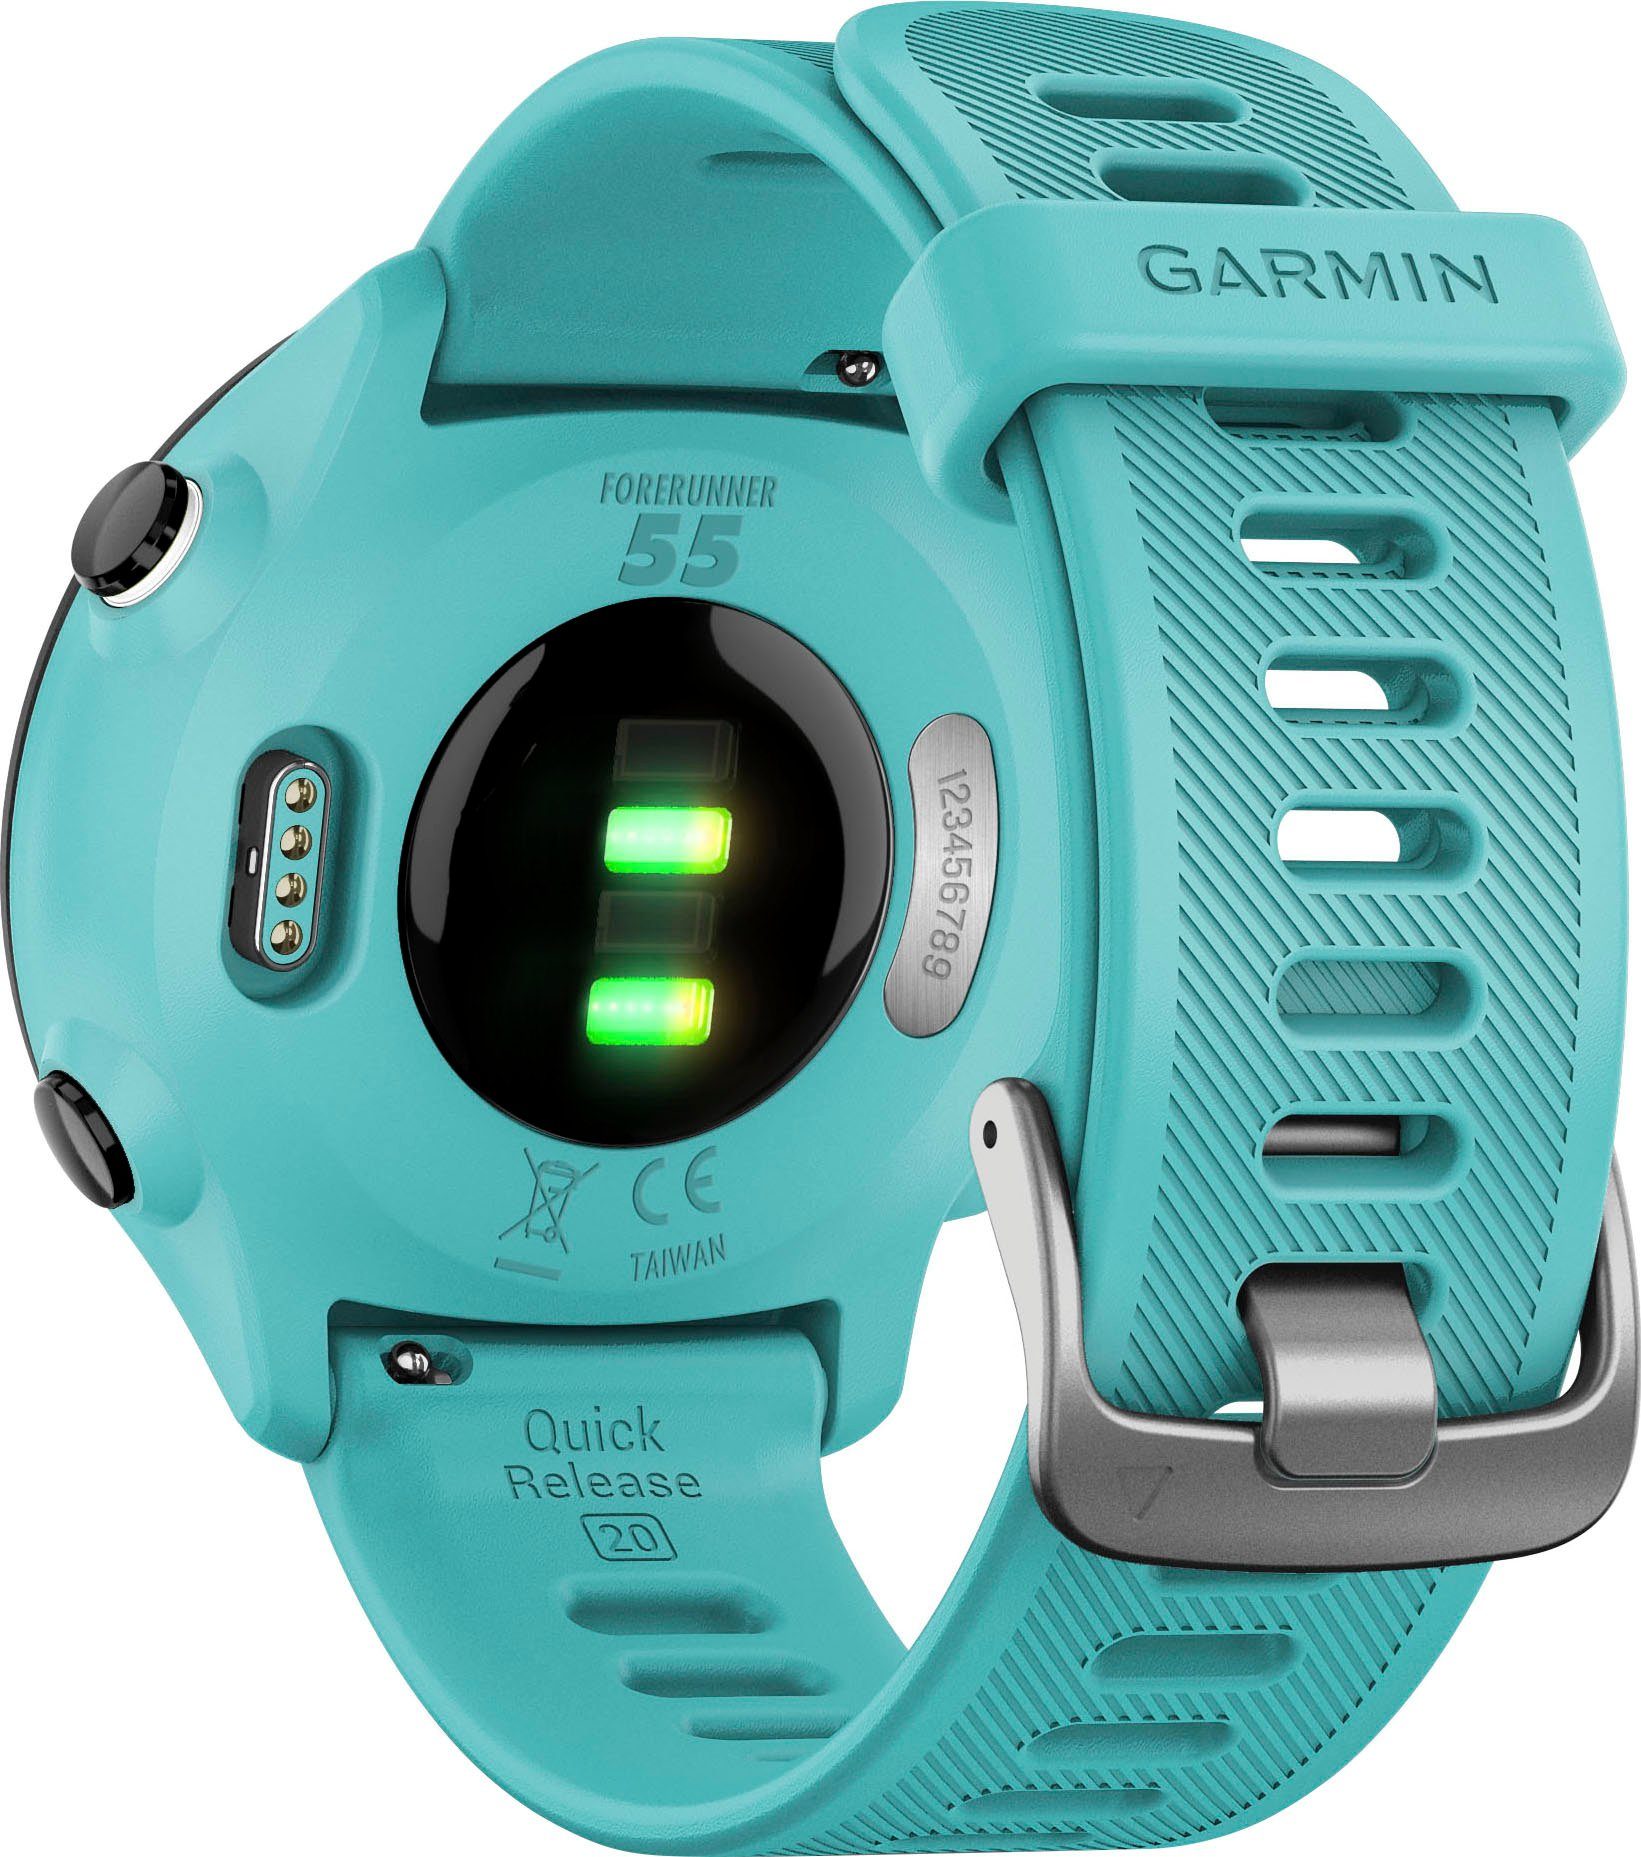 FORERUNNER 55 Zoll, GPS-Laufuhr | Smartwatch türkis cm/1,04 türkis/schwarz (2,64 Garmin Garmin), Multisport-